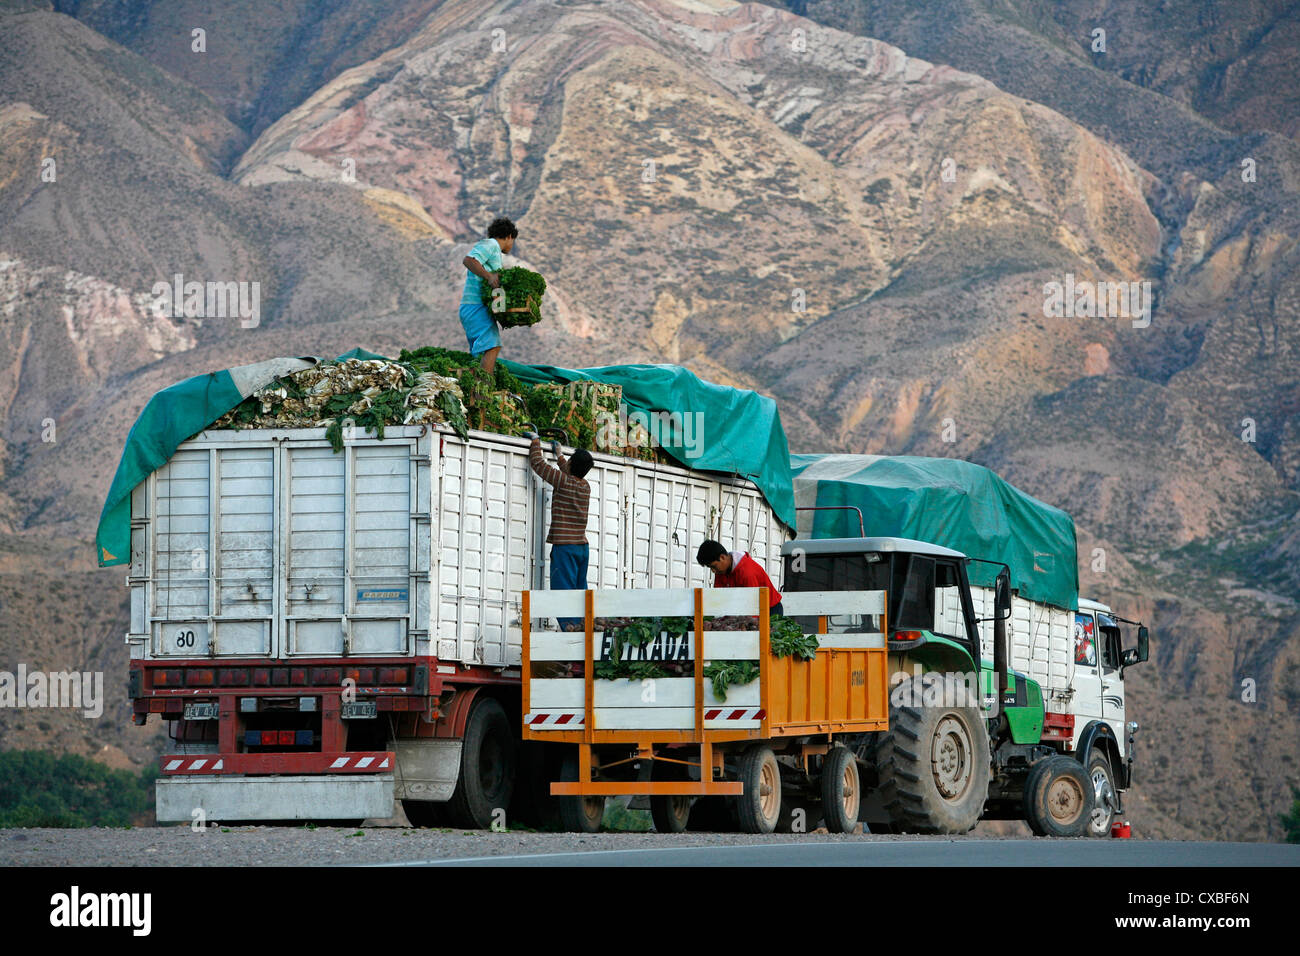 Chargement d'un camion avec des travailleurs de la laitue, Quebrada de Humahuaca, Province de Jujuy, en Argentine. Banque D'Images